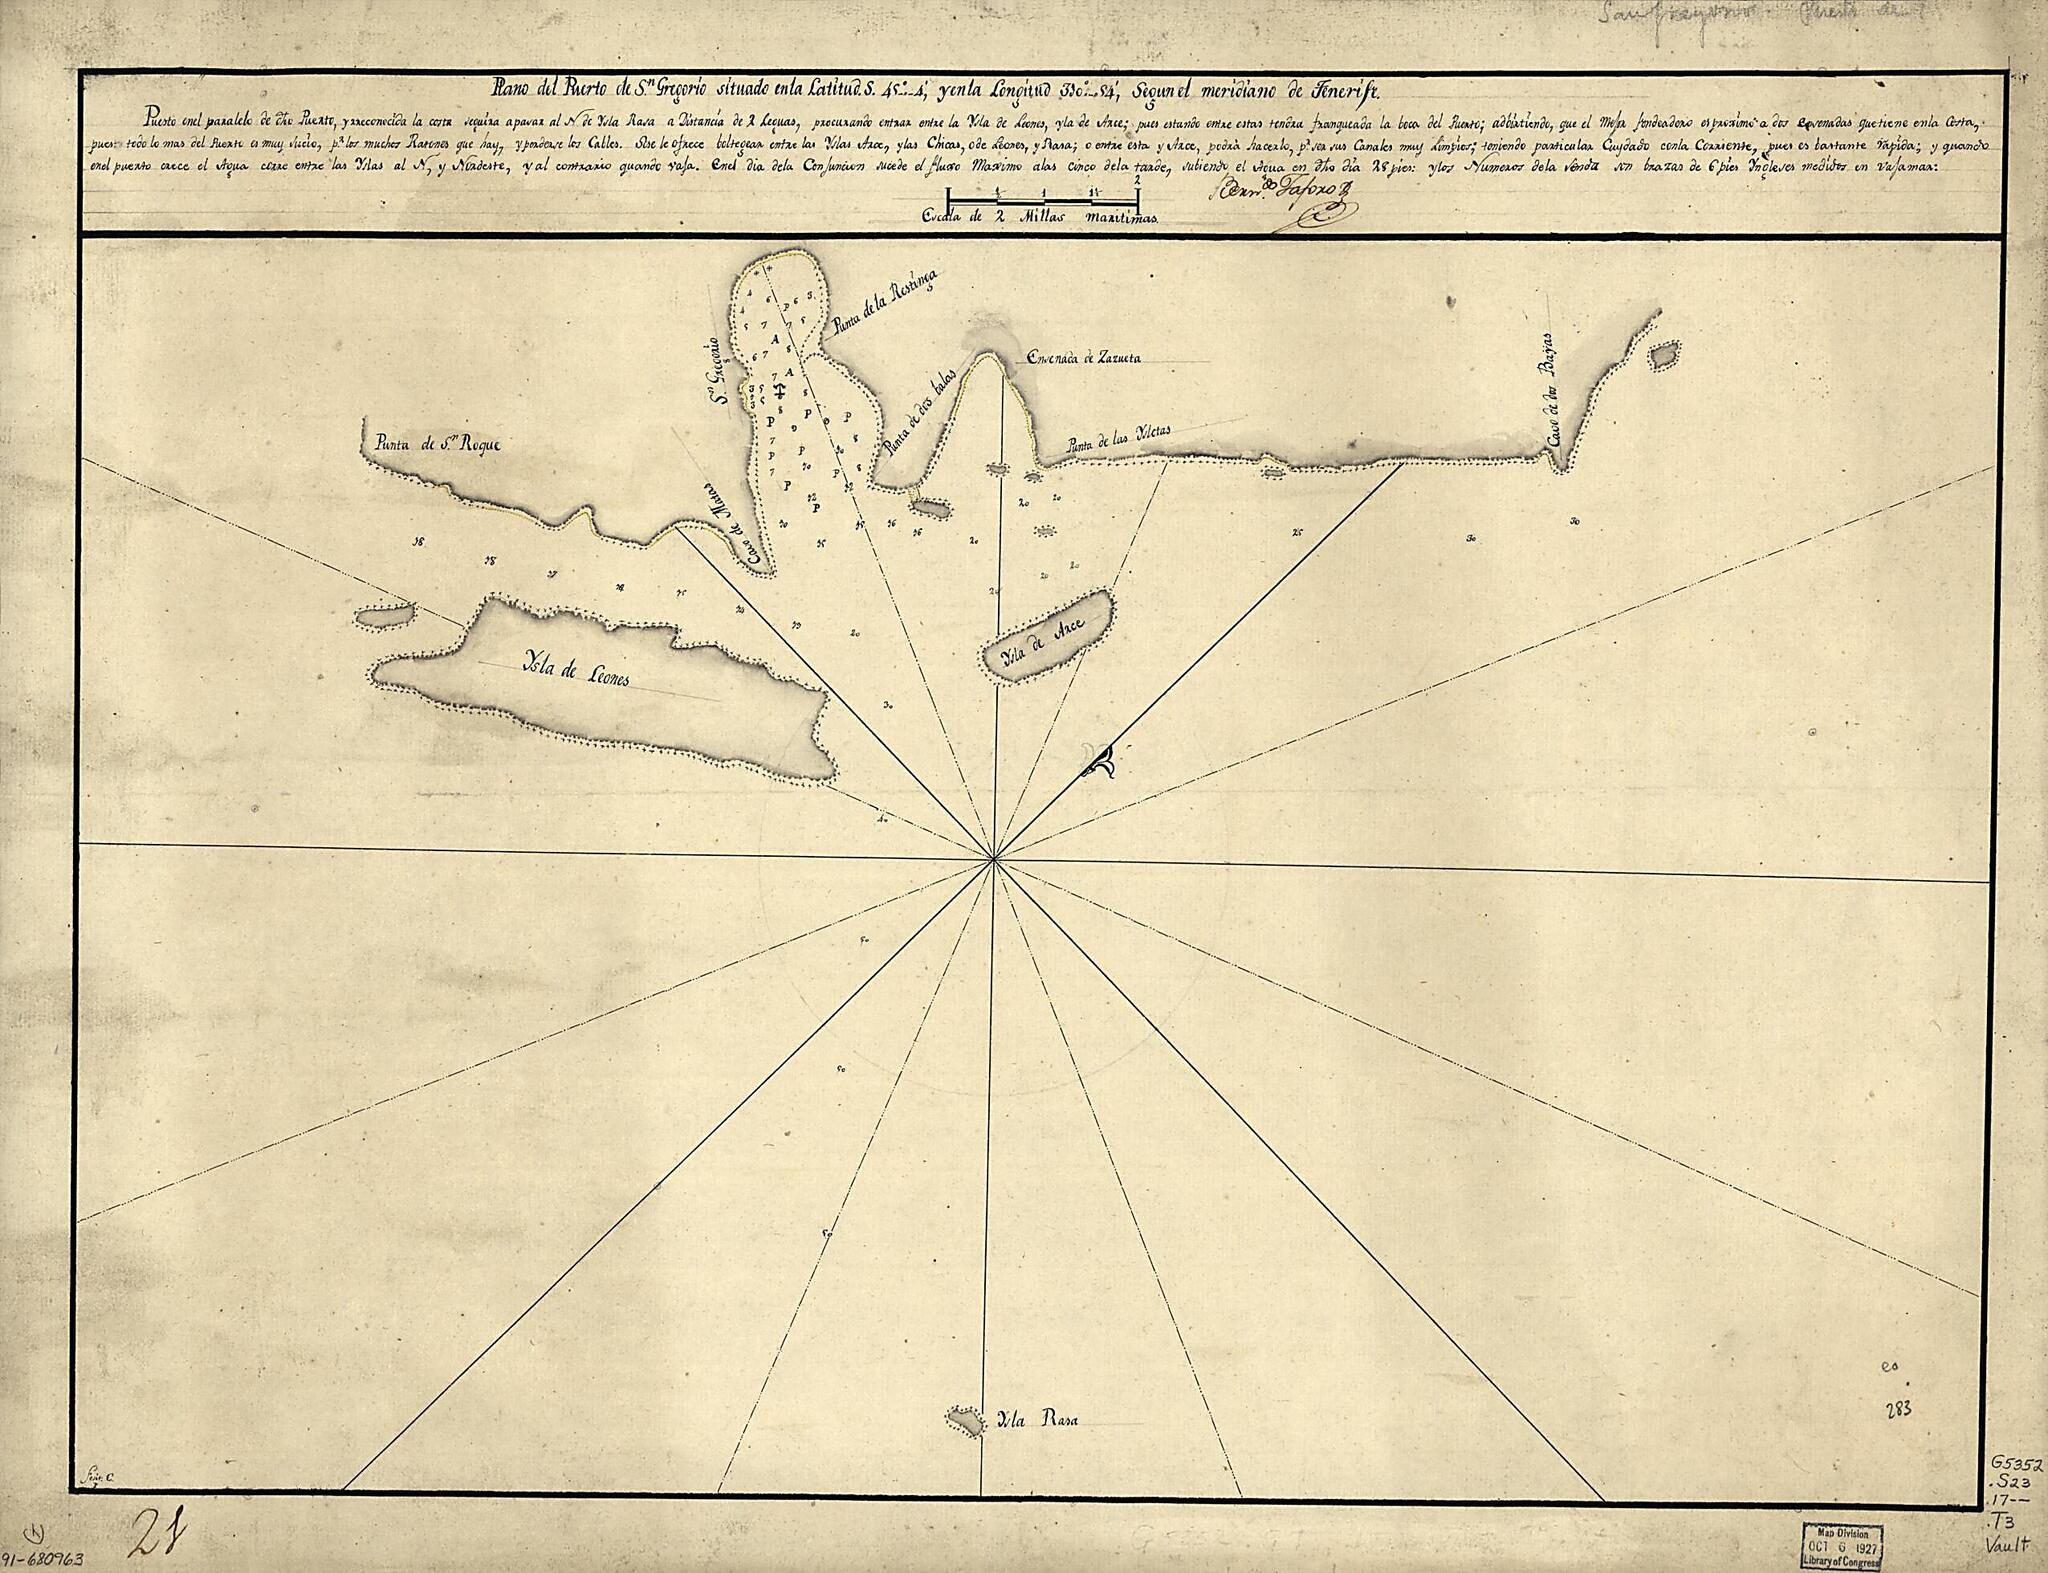 This old map of Plano Del Puerto De Sn. Gregorio Situado En La Latitud S. 45⁰4ʹ Y En La Longitud 310⁰54ʹ Segun El Meridiano De Tenerife from 1700 was created by Bernardo Taforo in 1700